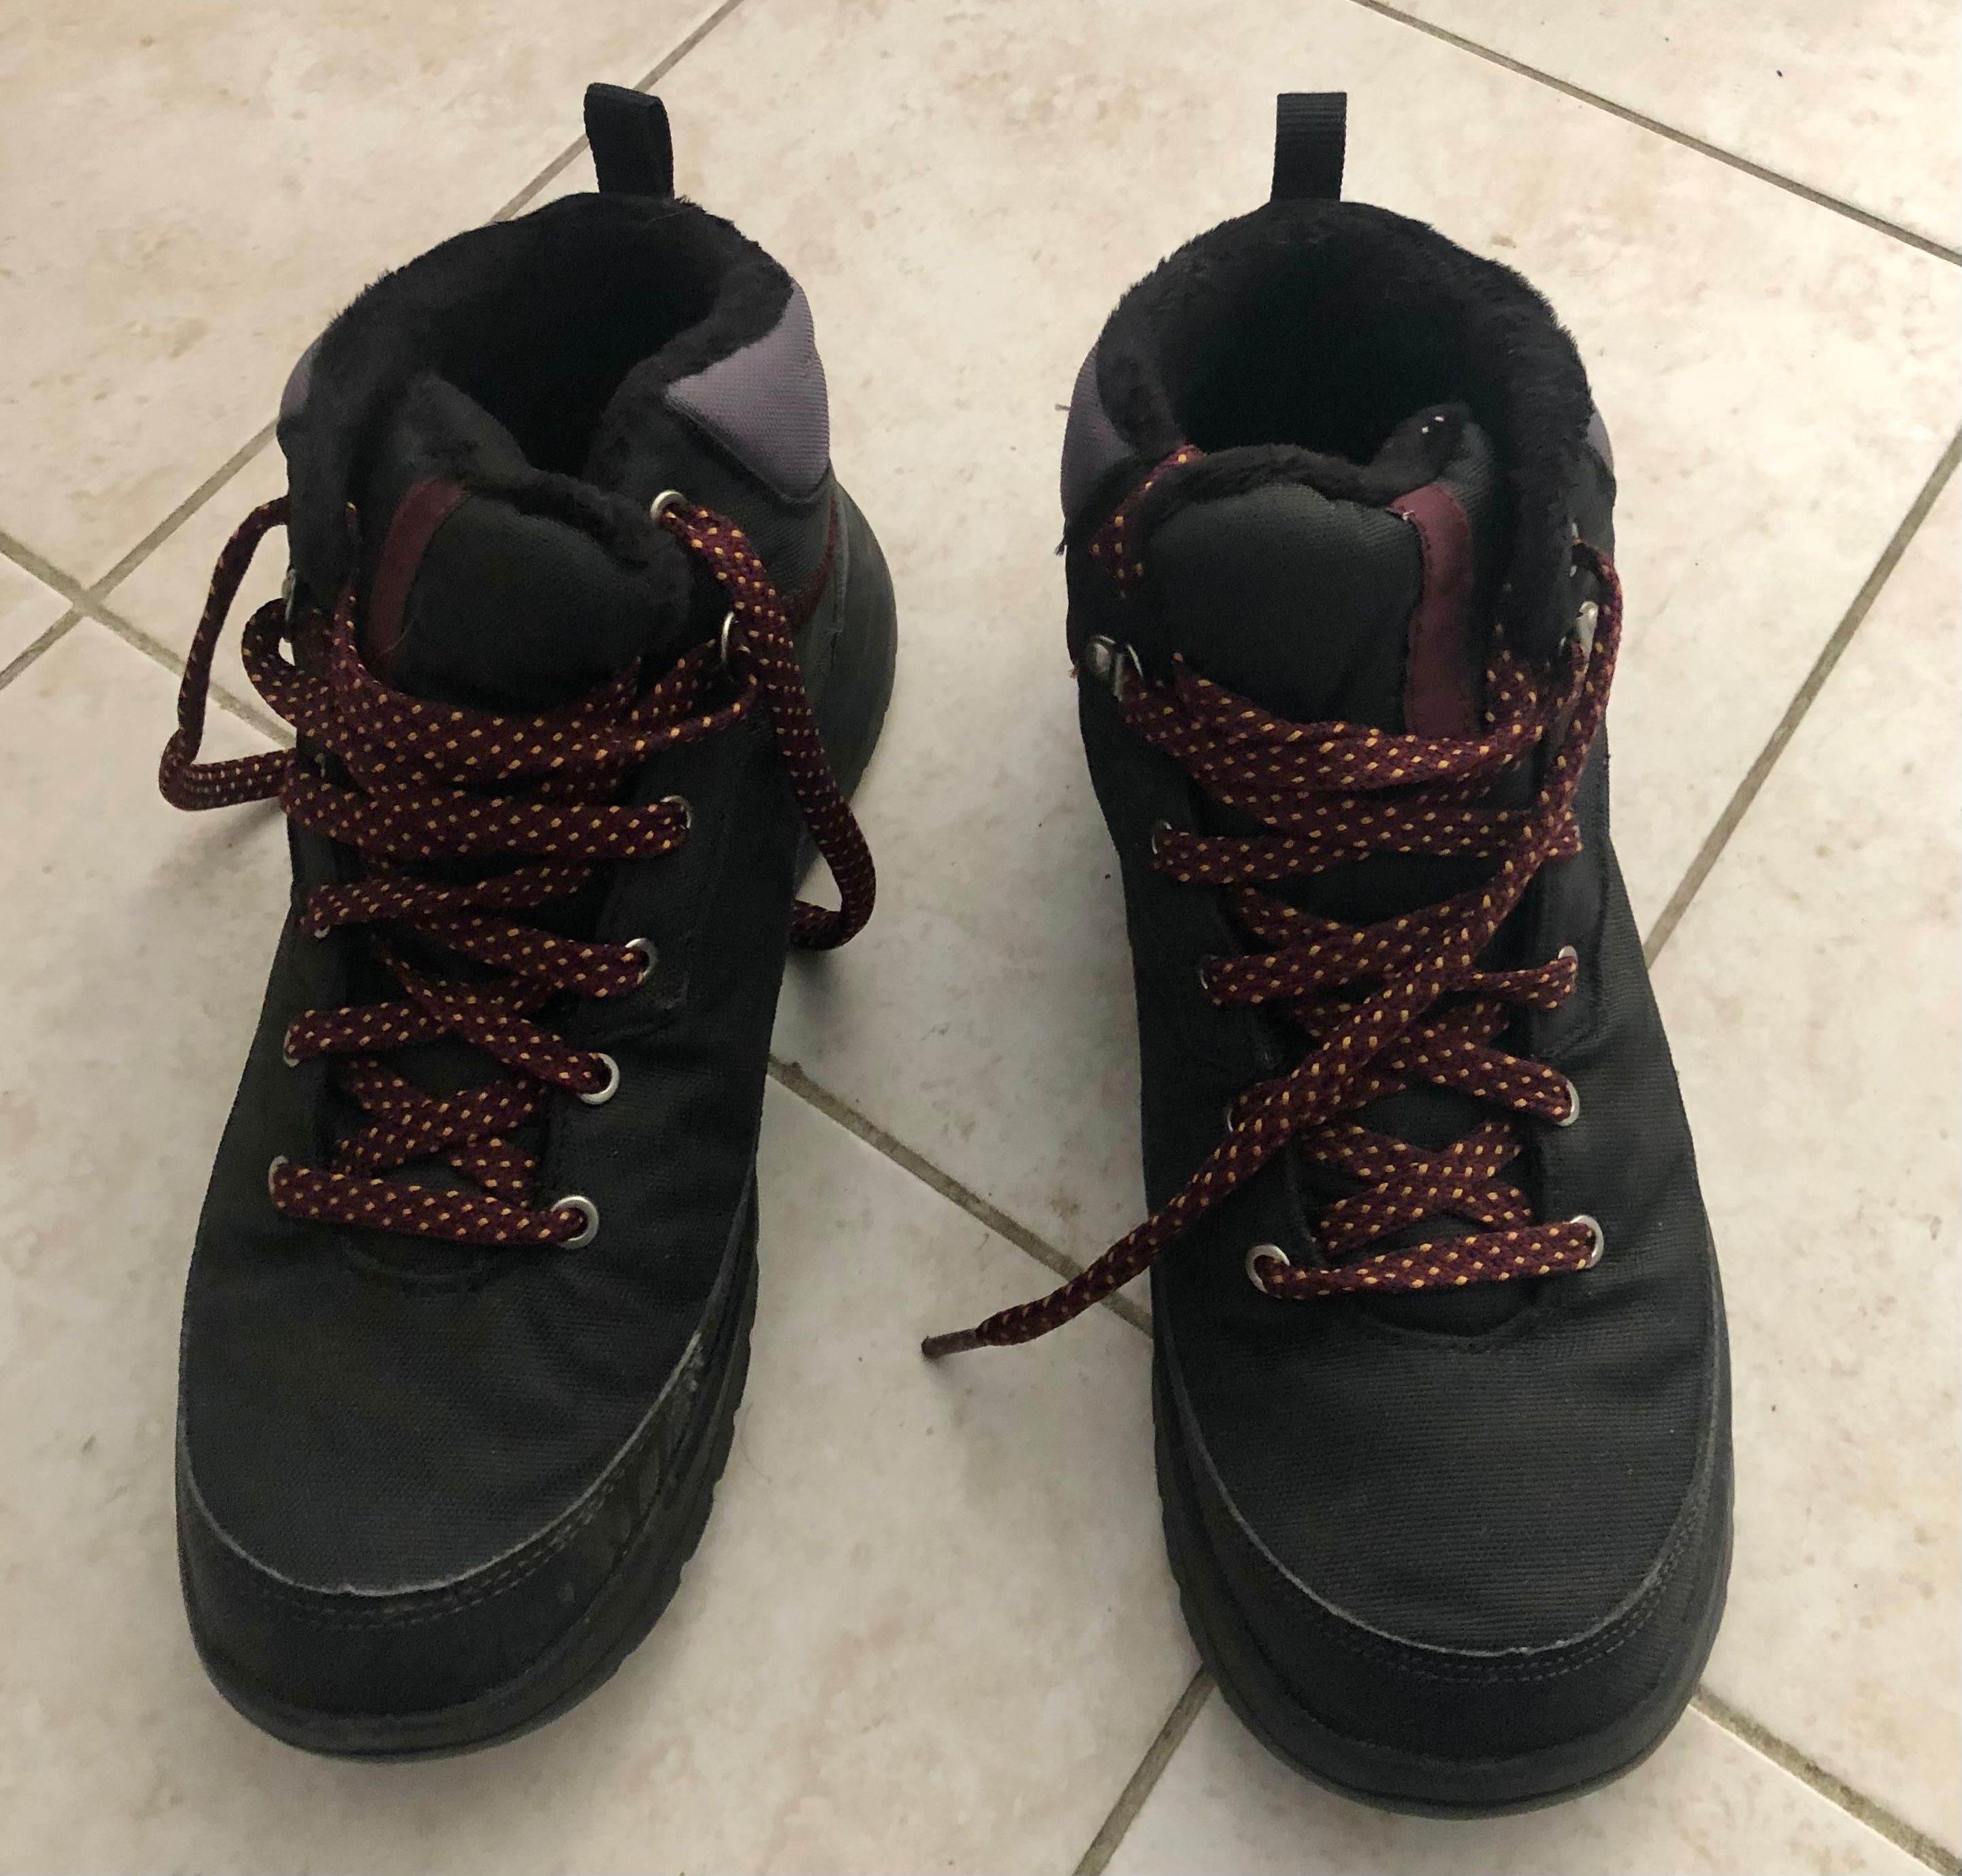 Мъжки непромокаеми туристически обувки QUECHUA SH100, 39 размер